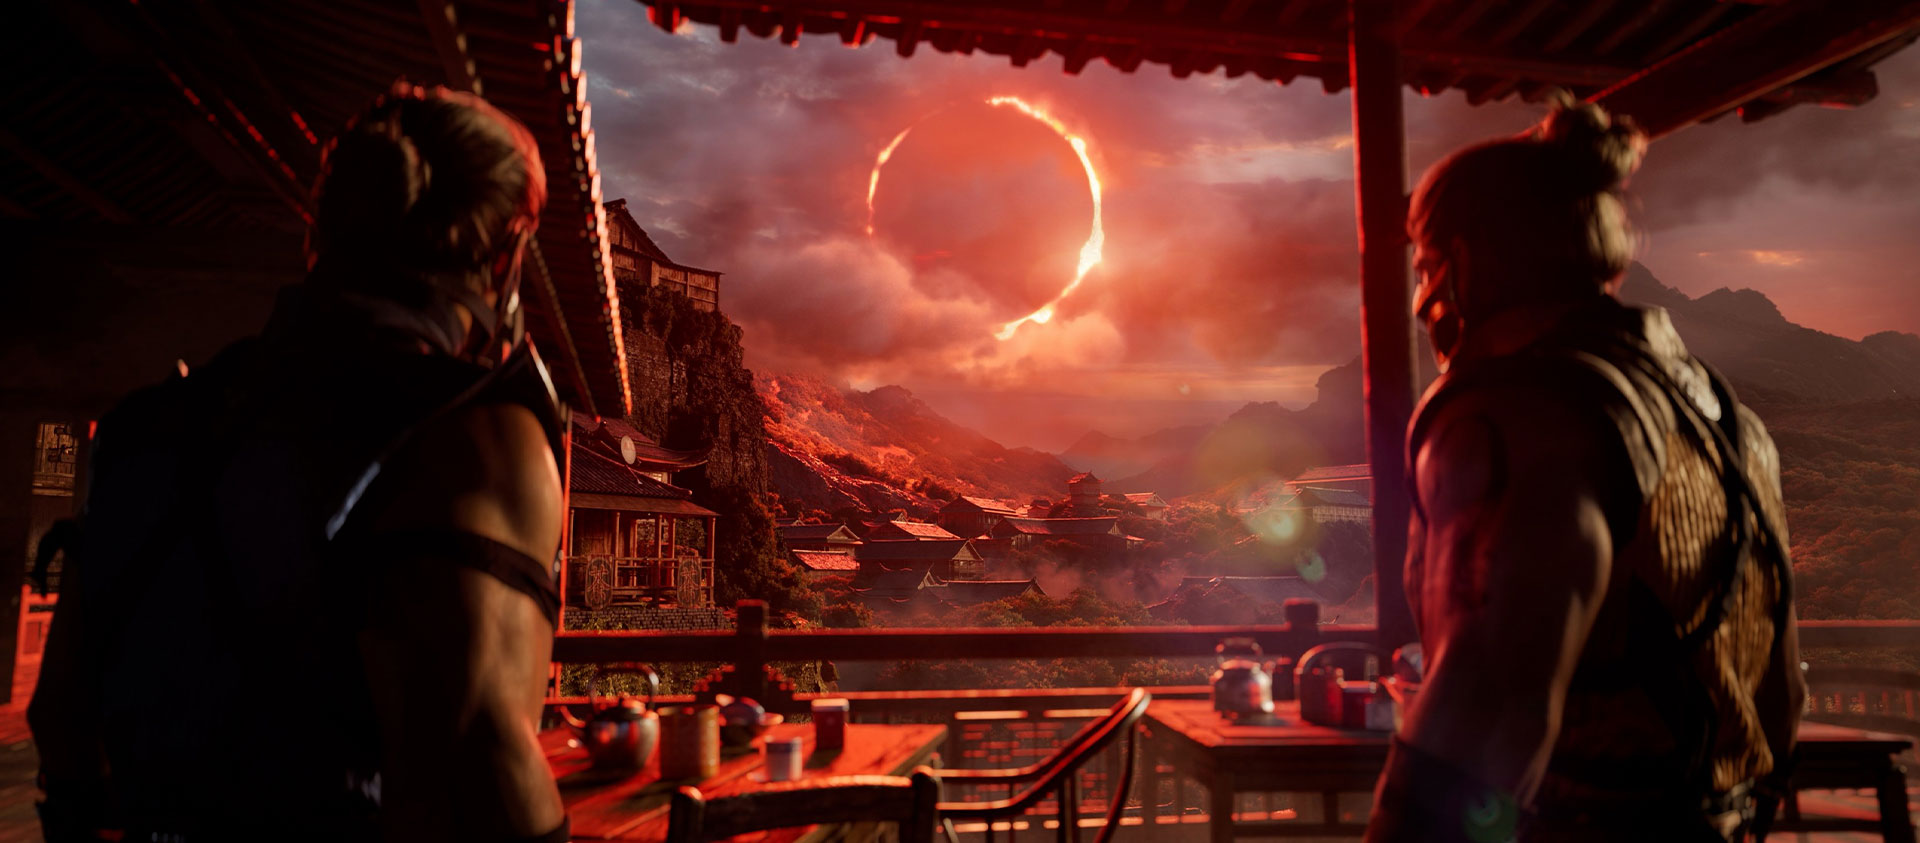 Mortal Kombat 1, barakanın altındaki iki karakter uzaktaki kırmızı güneş tutulmasına bakıyor